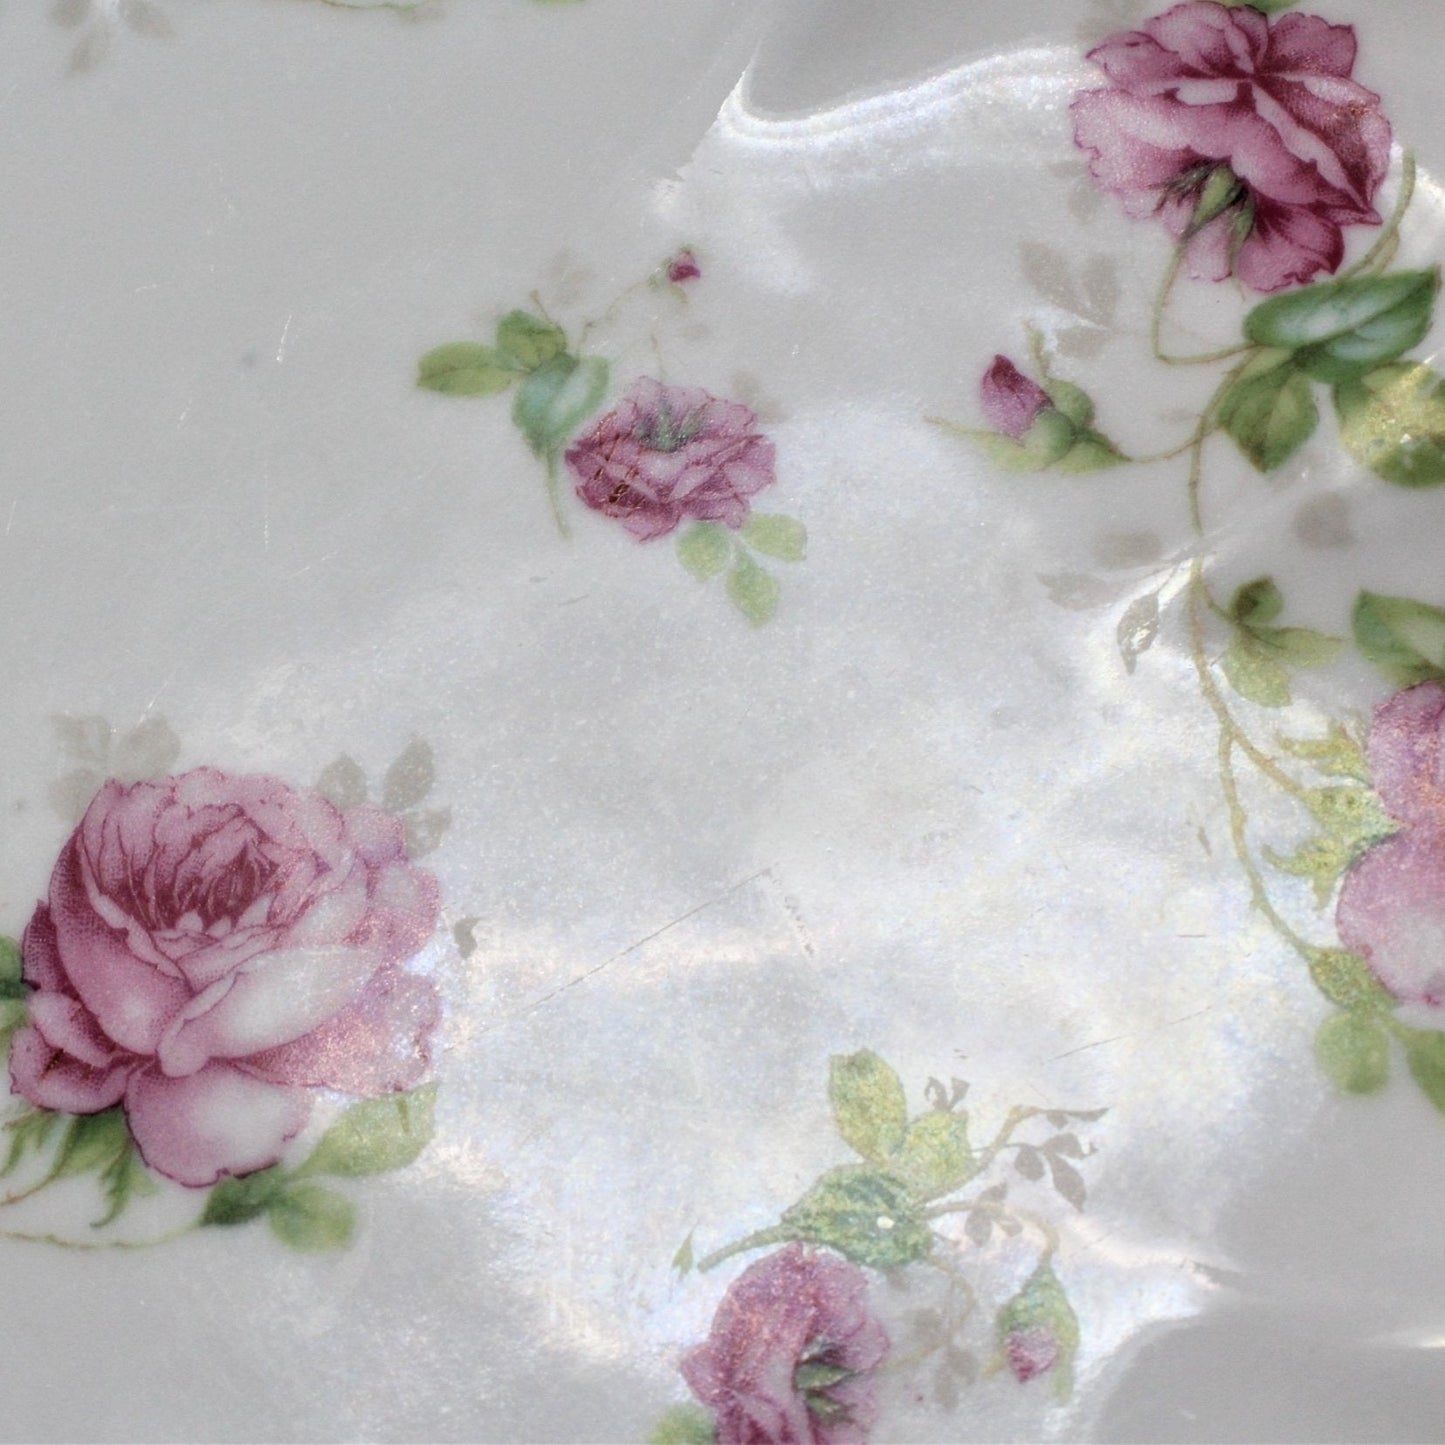 Decorative Bowl, M & Z Austria, Pink Roses, Antique